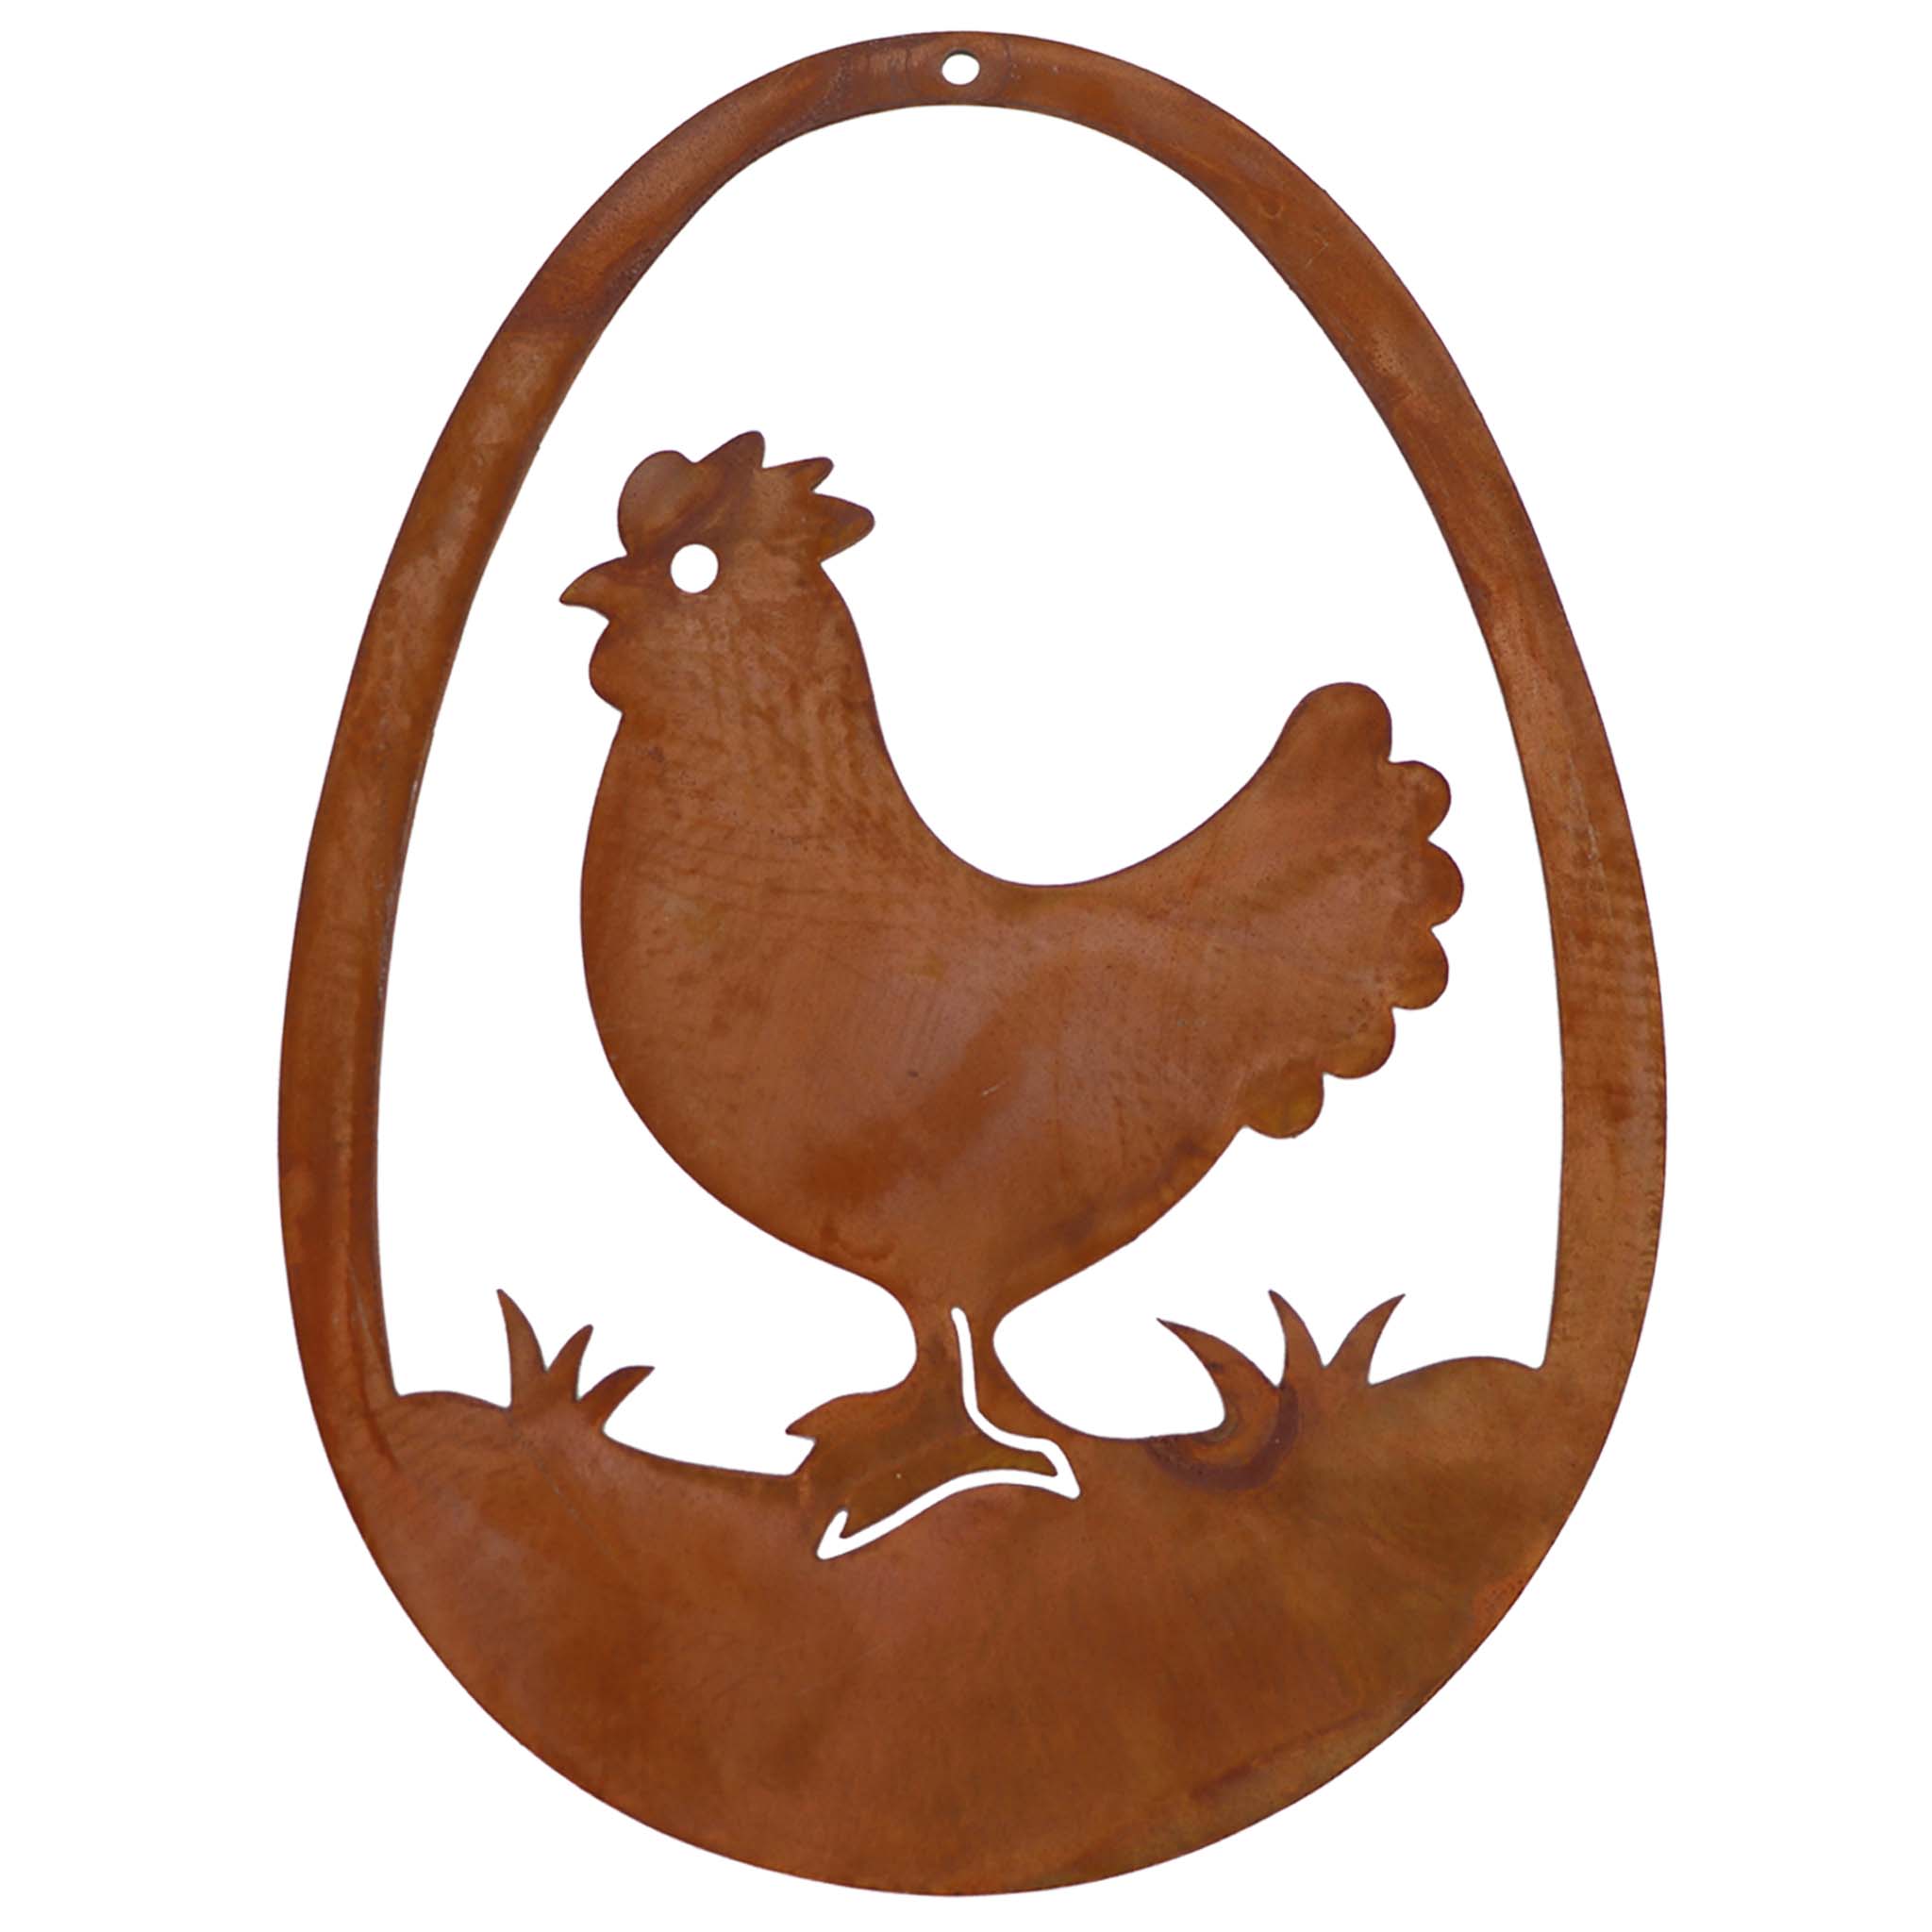 Handgefertigte Blechdeko mit Huhn-Motiv, rostiger Metall-Look